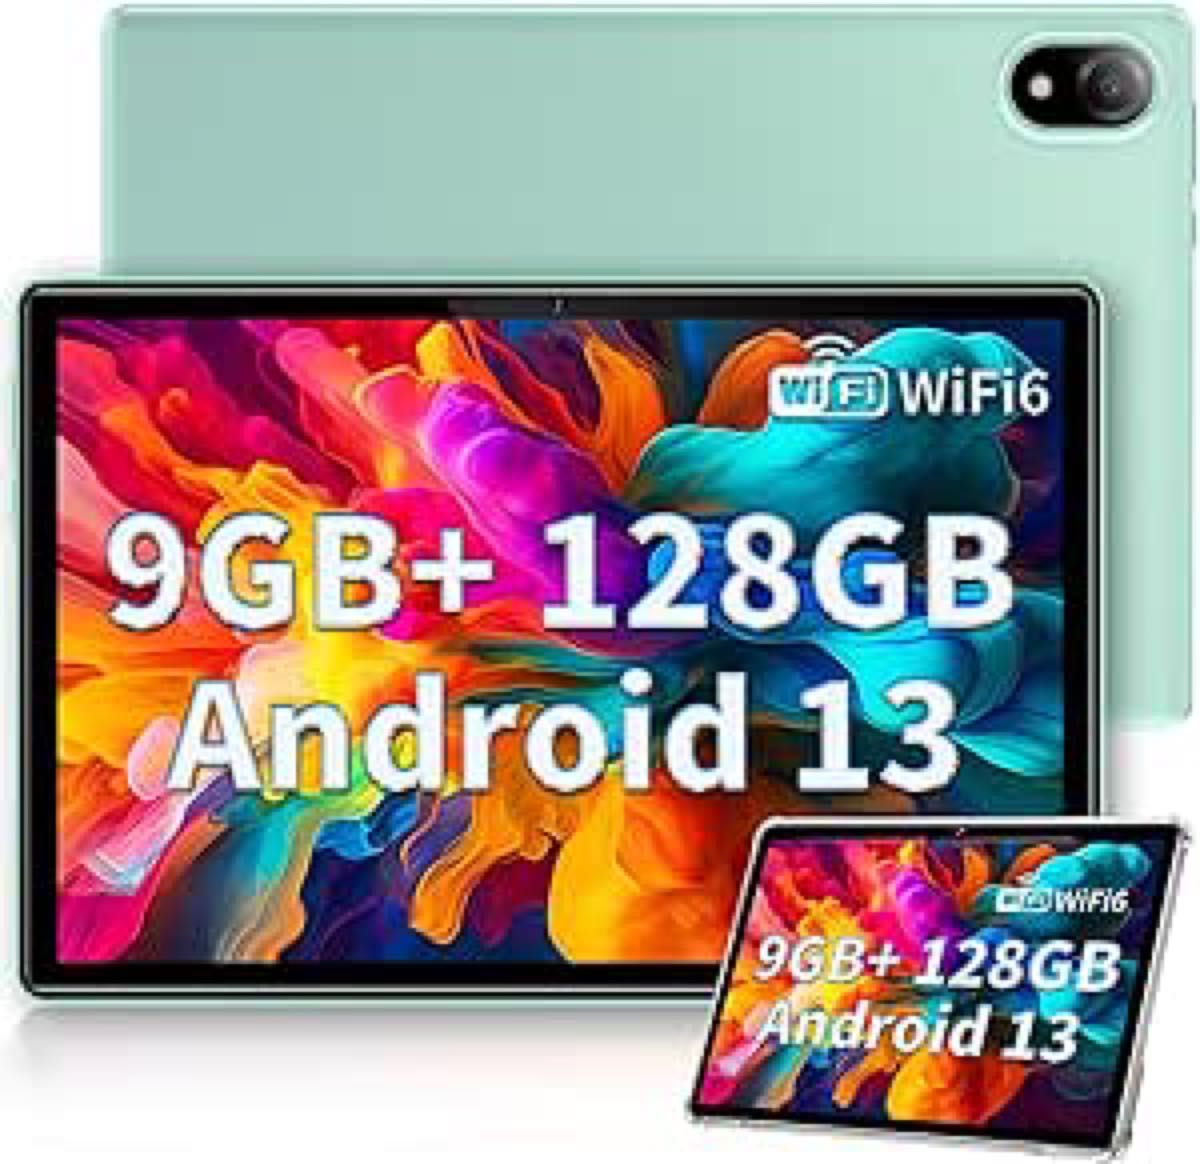 タブレット 10 インチ wi-fiモデル Android 13 9GB RAM + 128GB ROM 専用ケース付